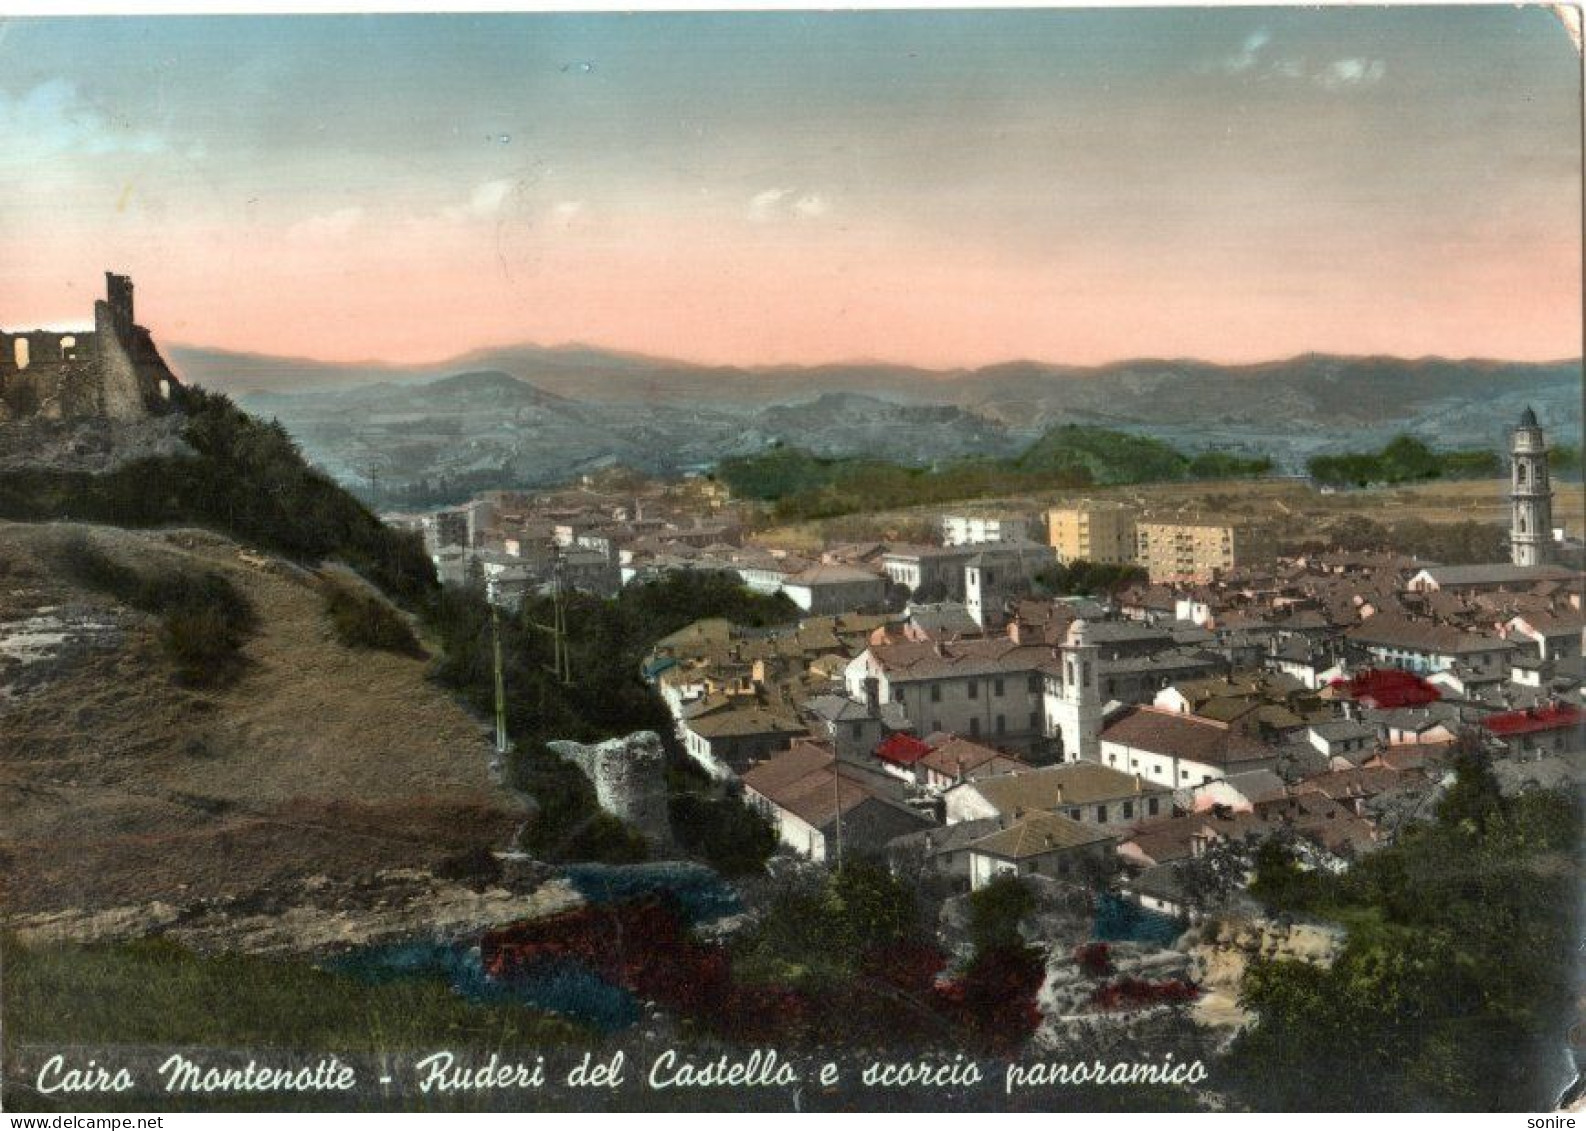 CAIRO MONTENOTTE (SAVONA) RUDERI DEL CASTELLO E PANORAMA - ED.CIRIA - VG FG - C0380 - Savona